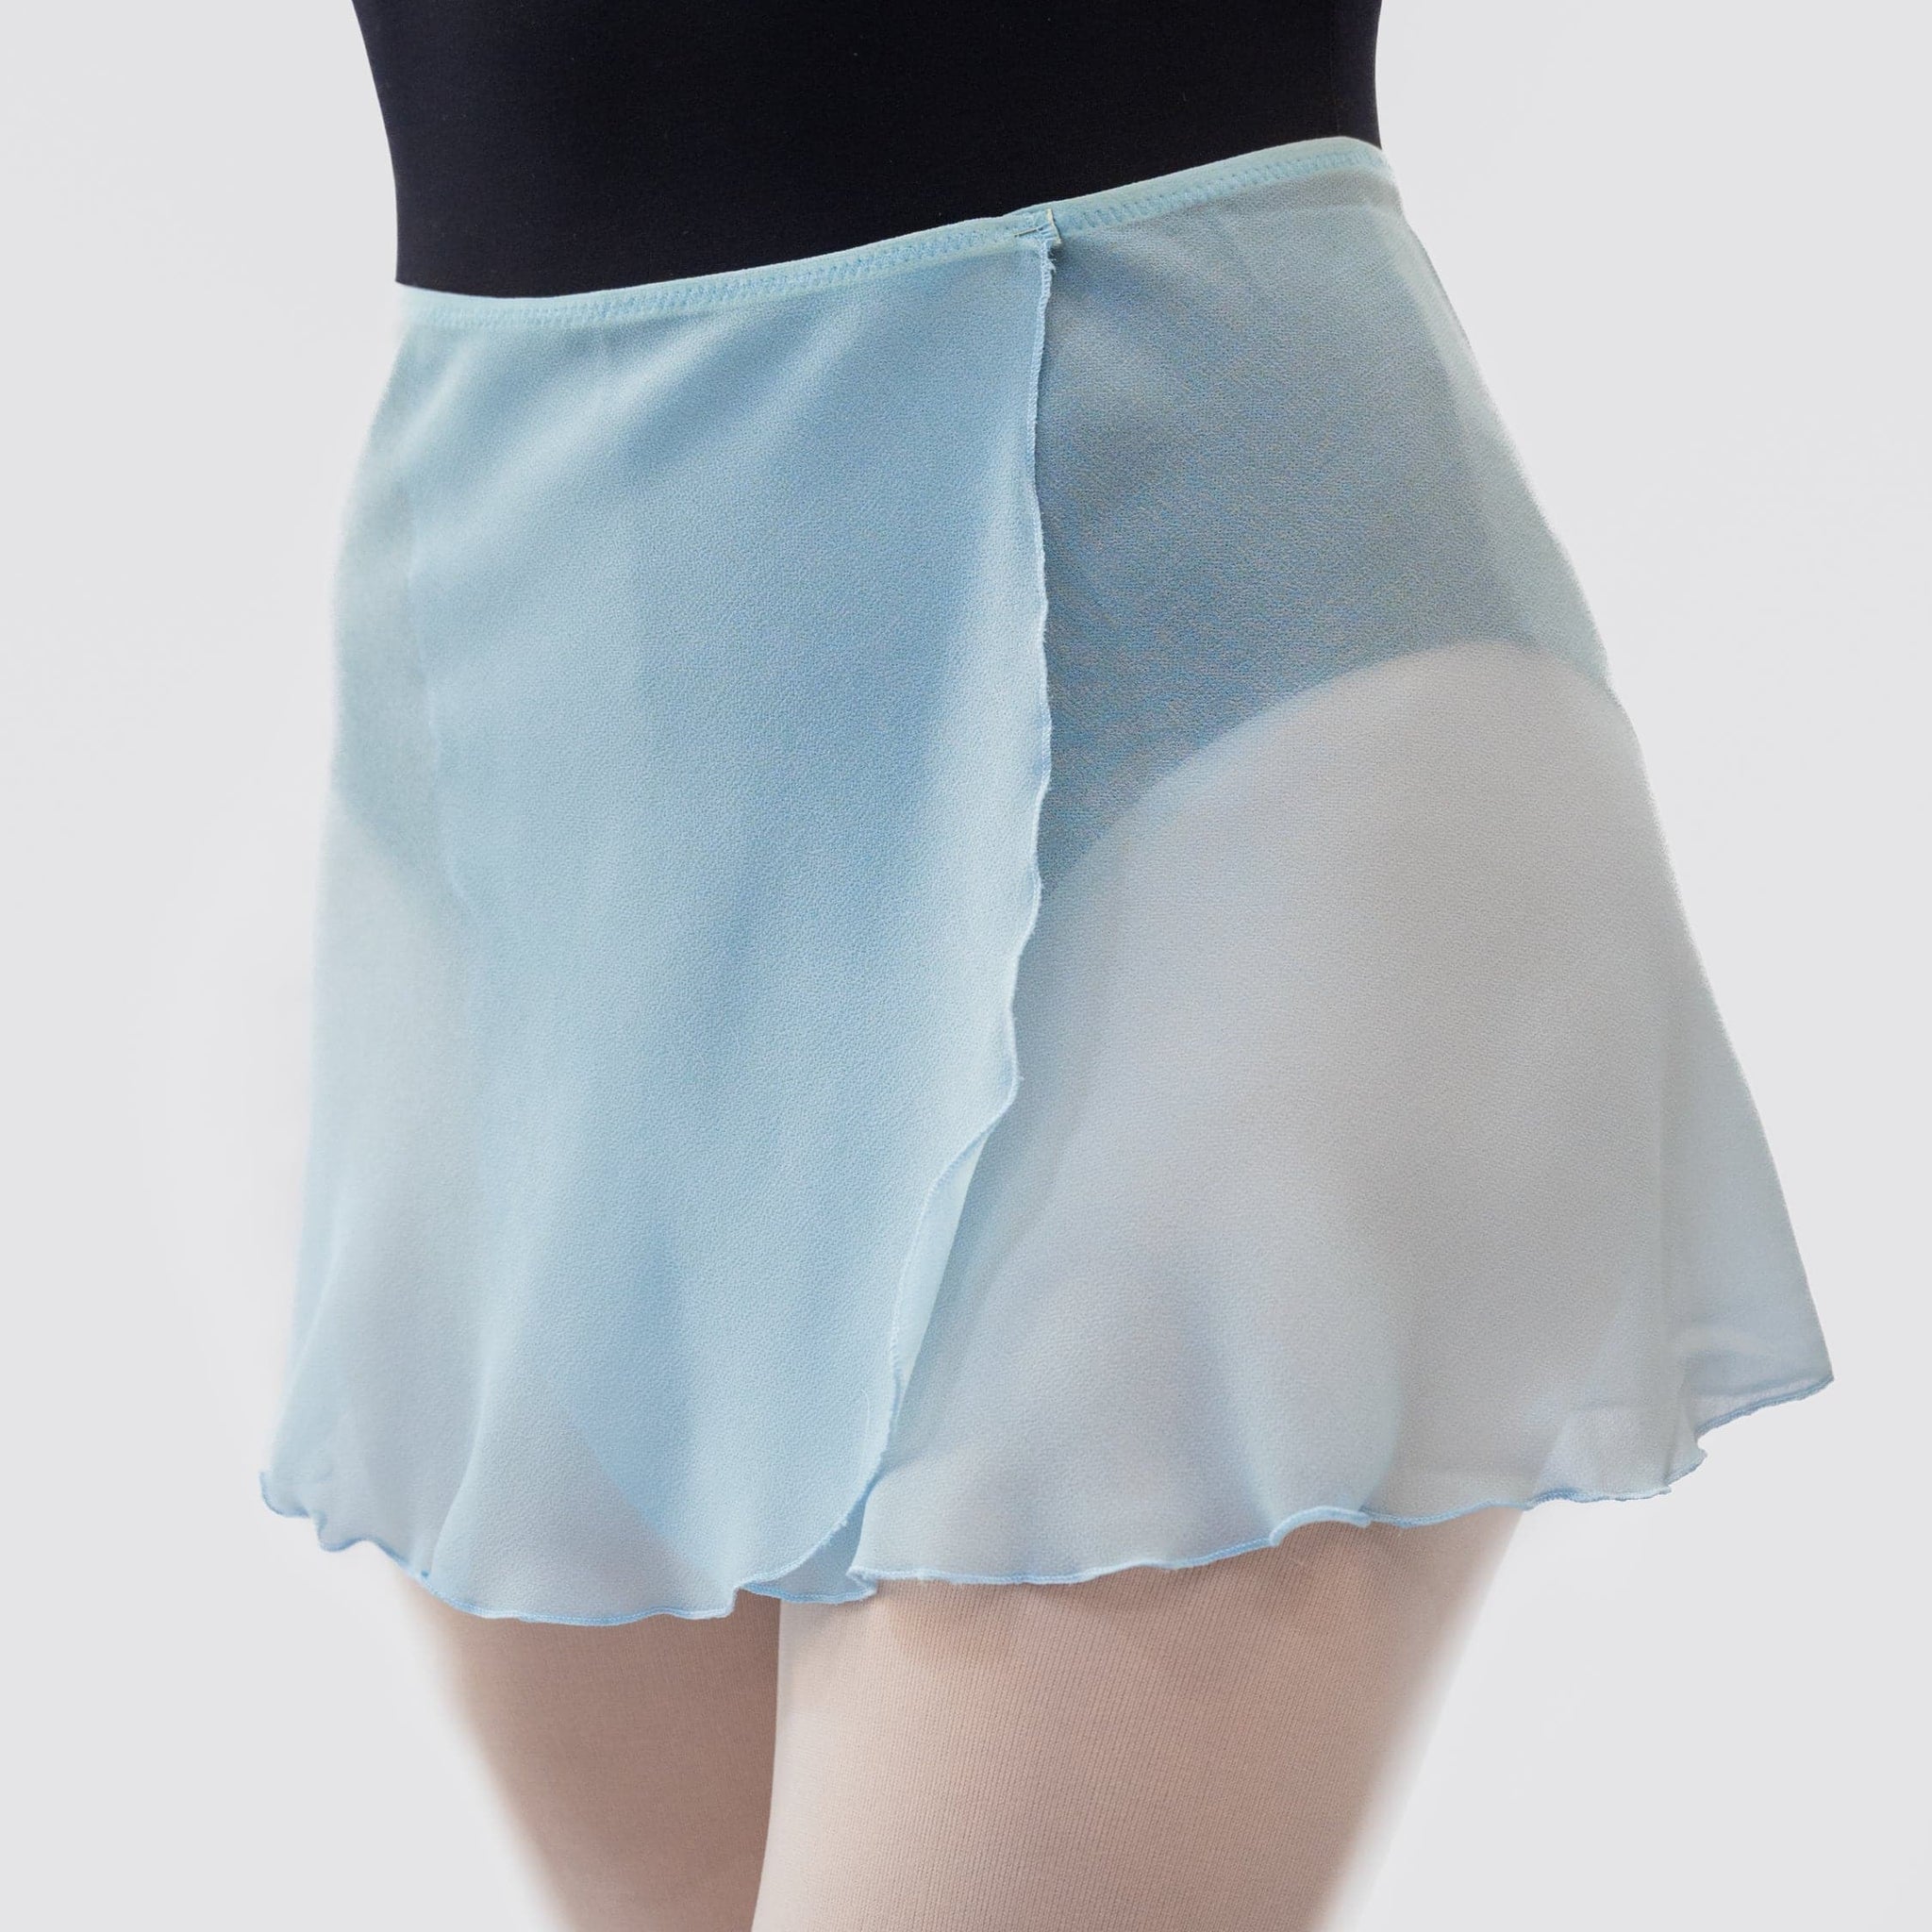 Danza Atelier Skirt Blue Wrap MP301 MP della Light Dance - Short